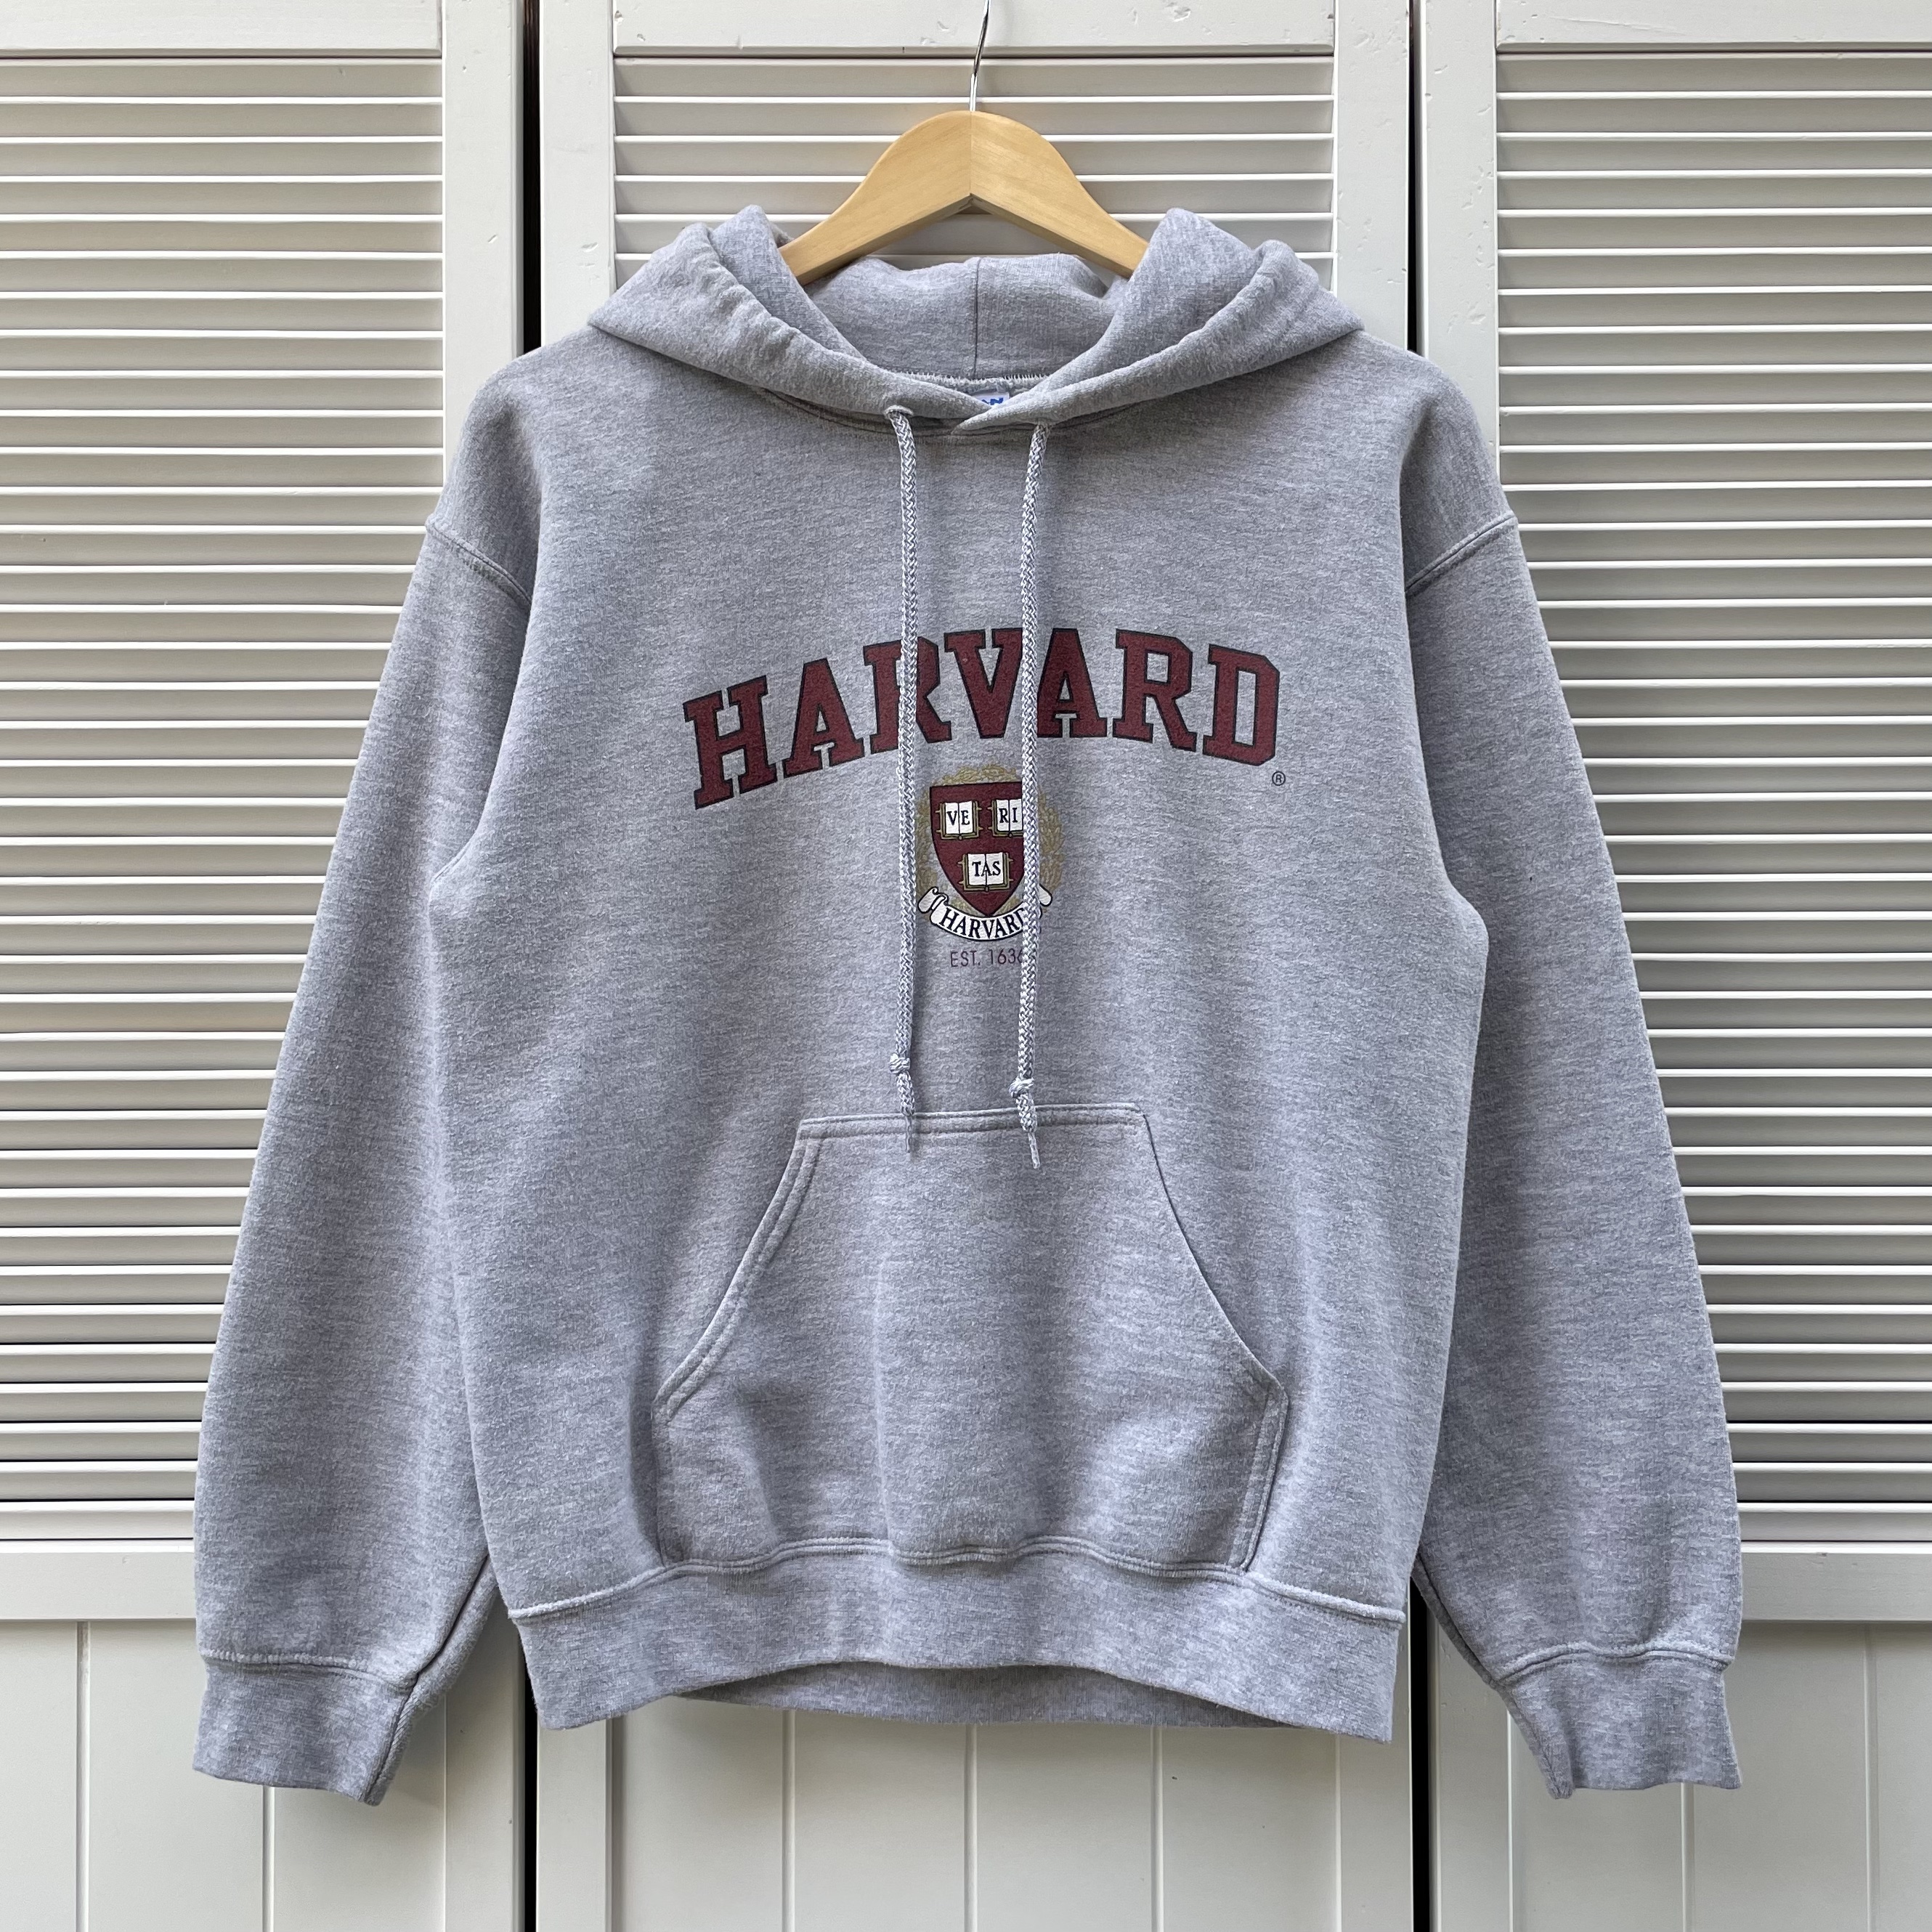 Harvard University college hoodie